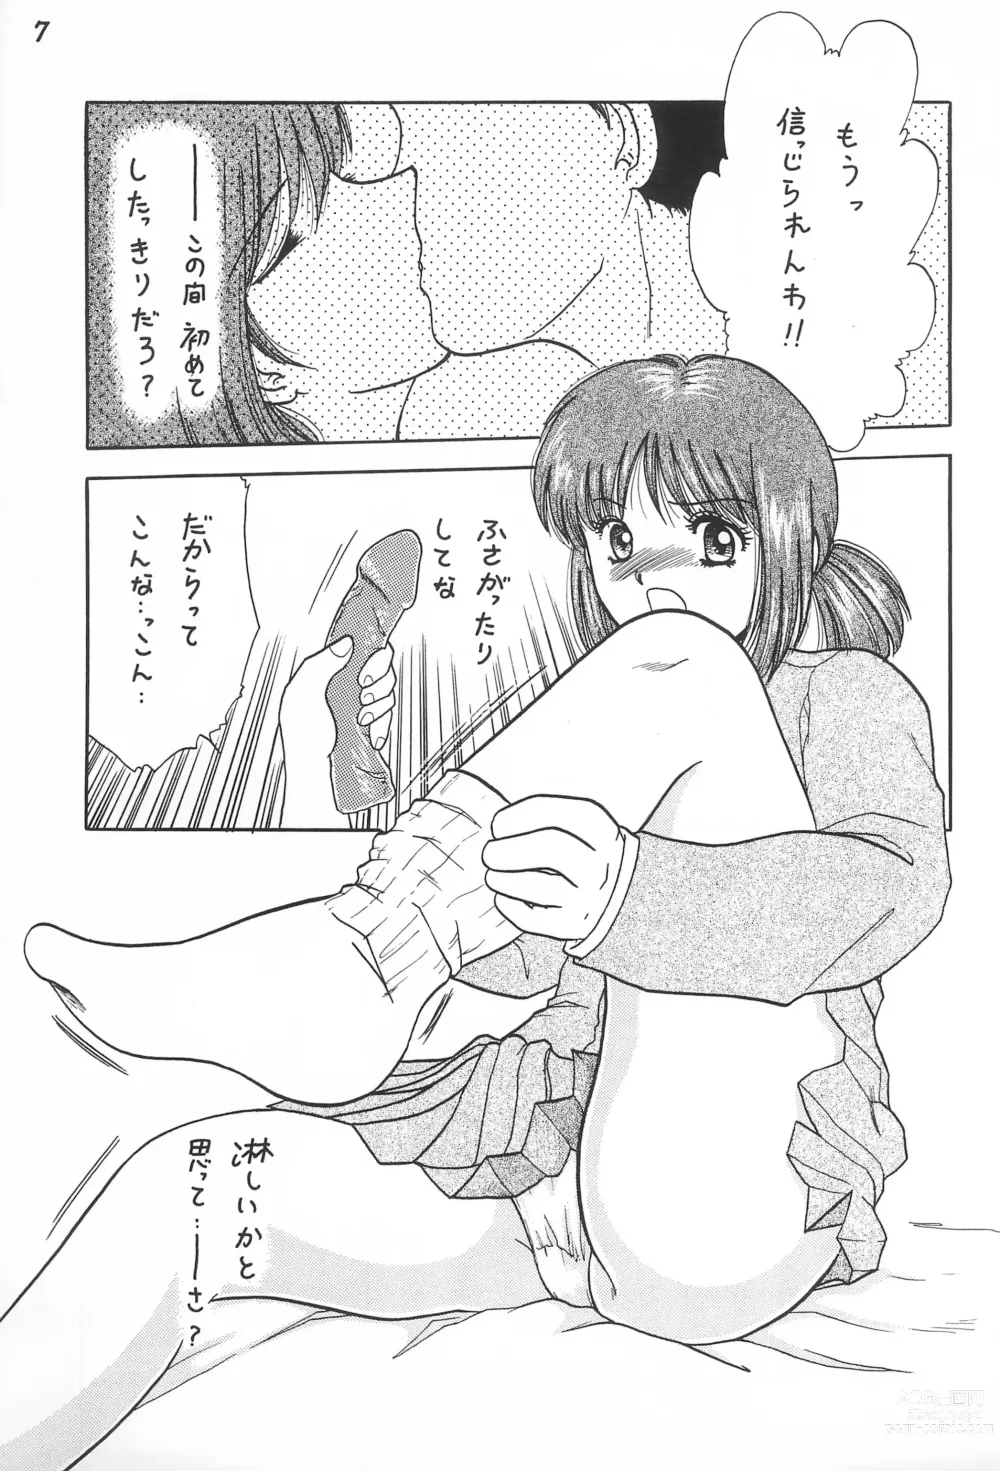 Page 9 of doujinshi Gokuraku Tokkyuu CAMERON